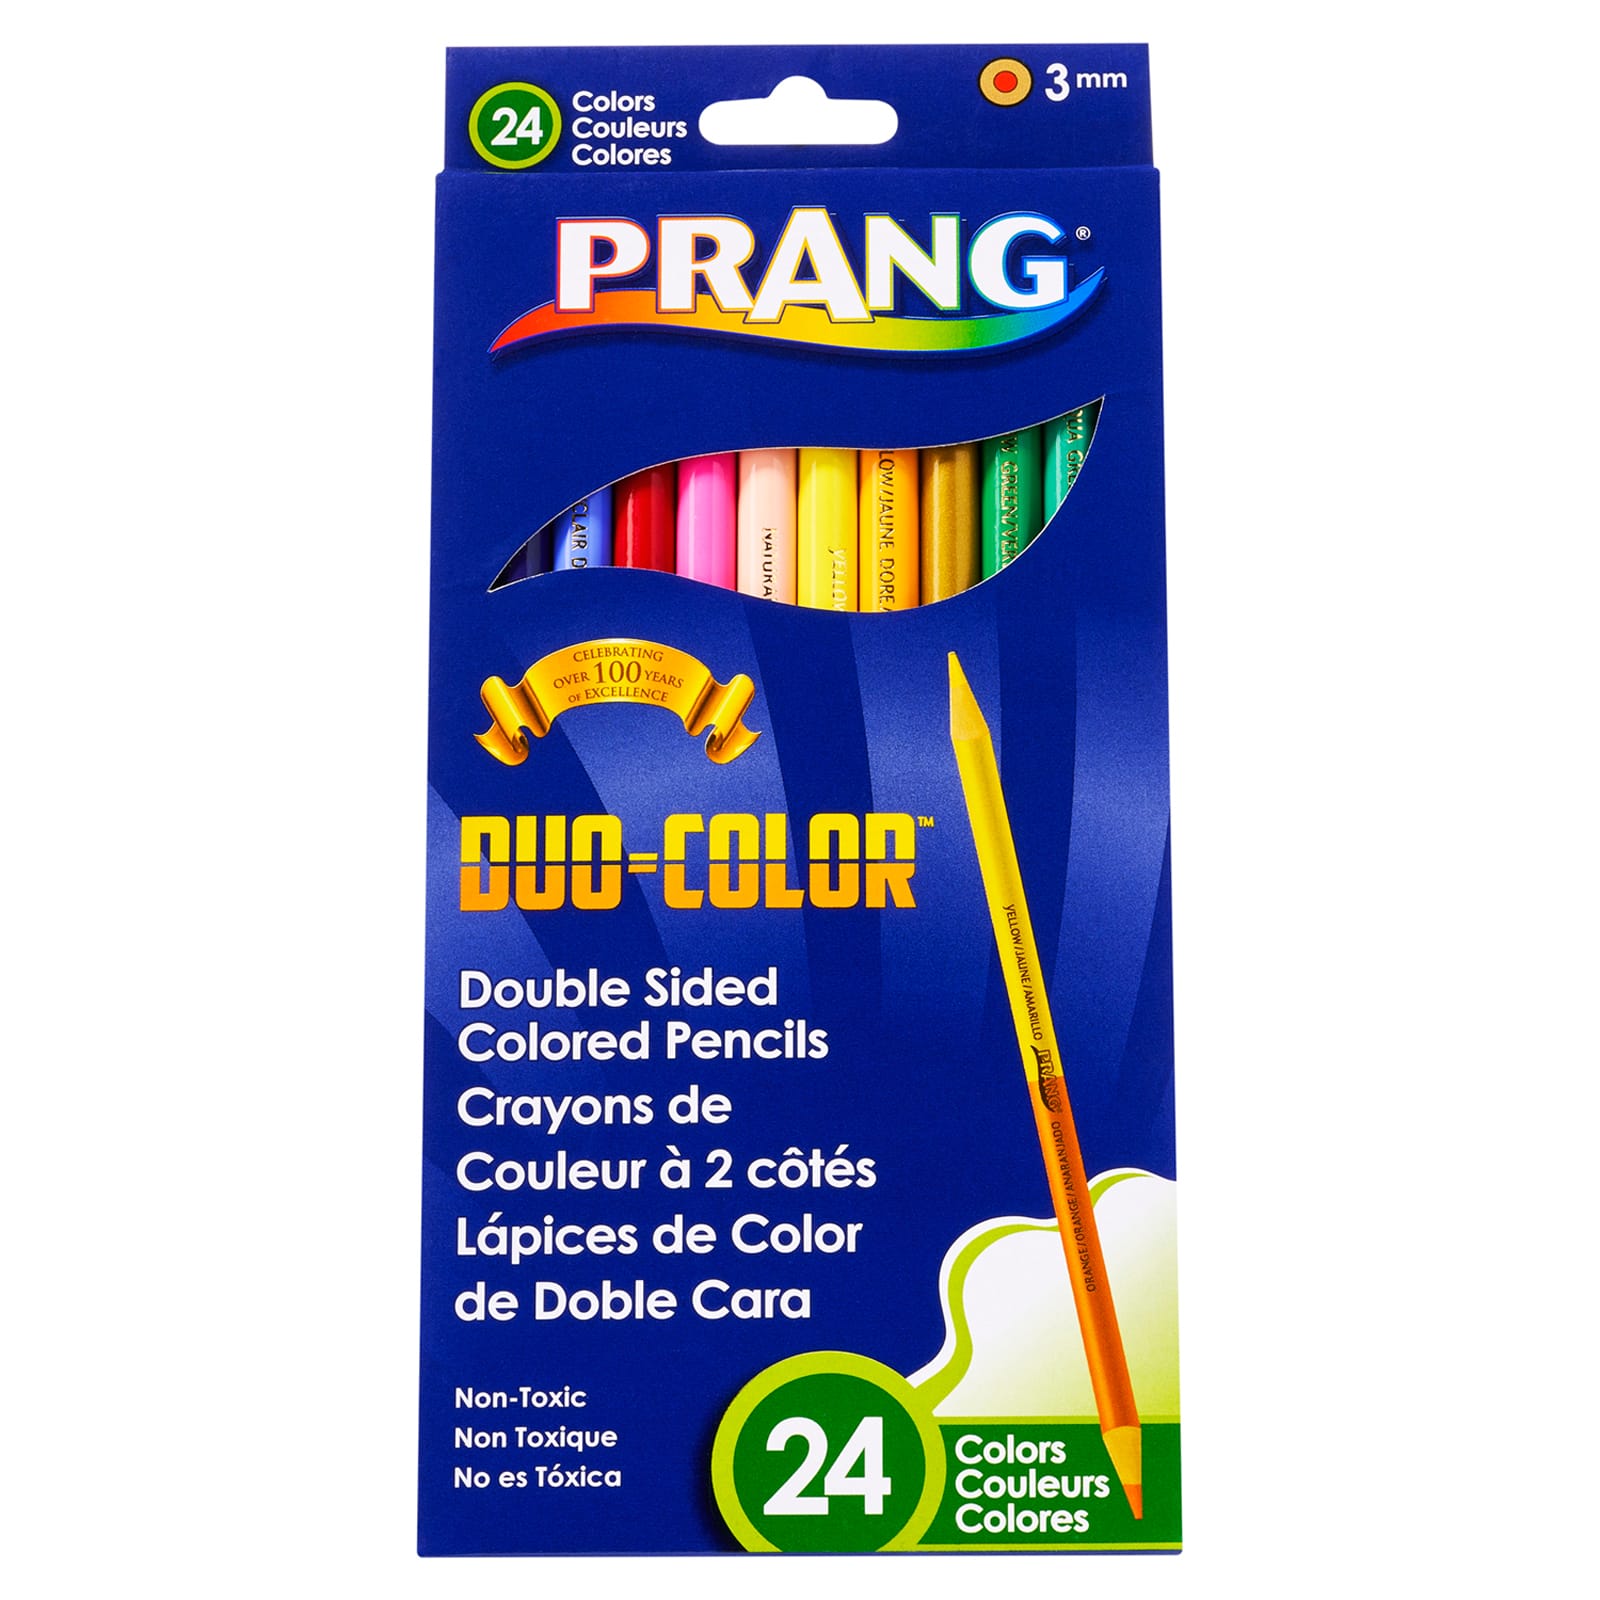 Prang&#xAE; Duo Colored&#x2122; Pencils, 6 Packs of 24 Colors